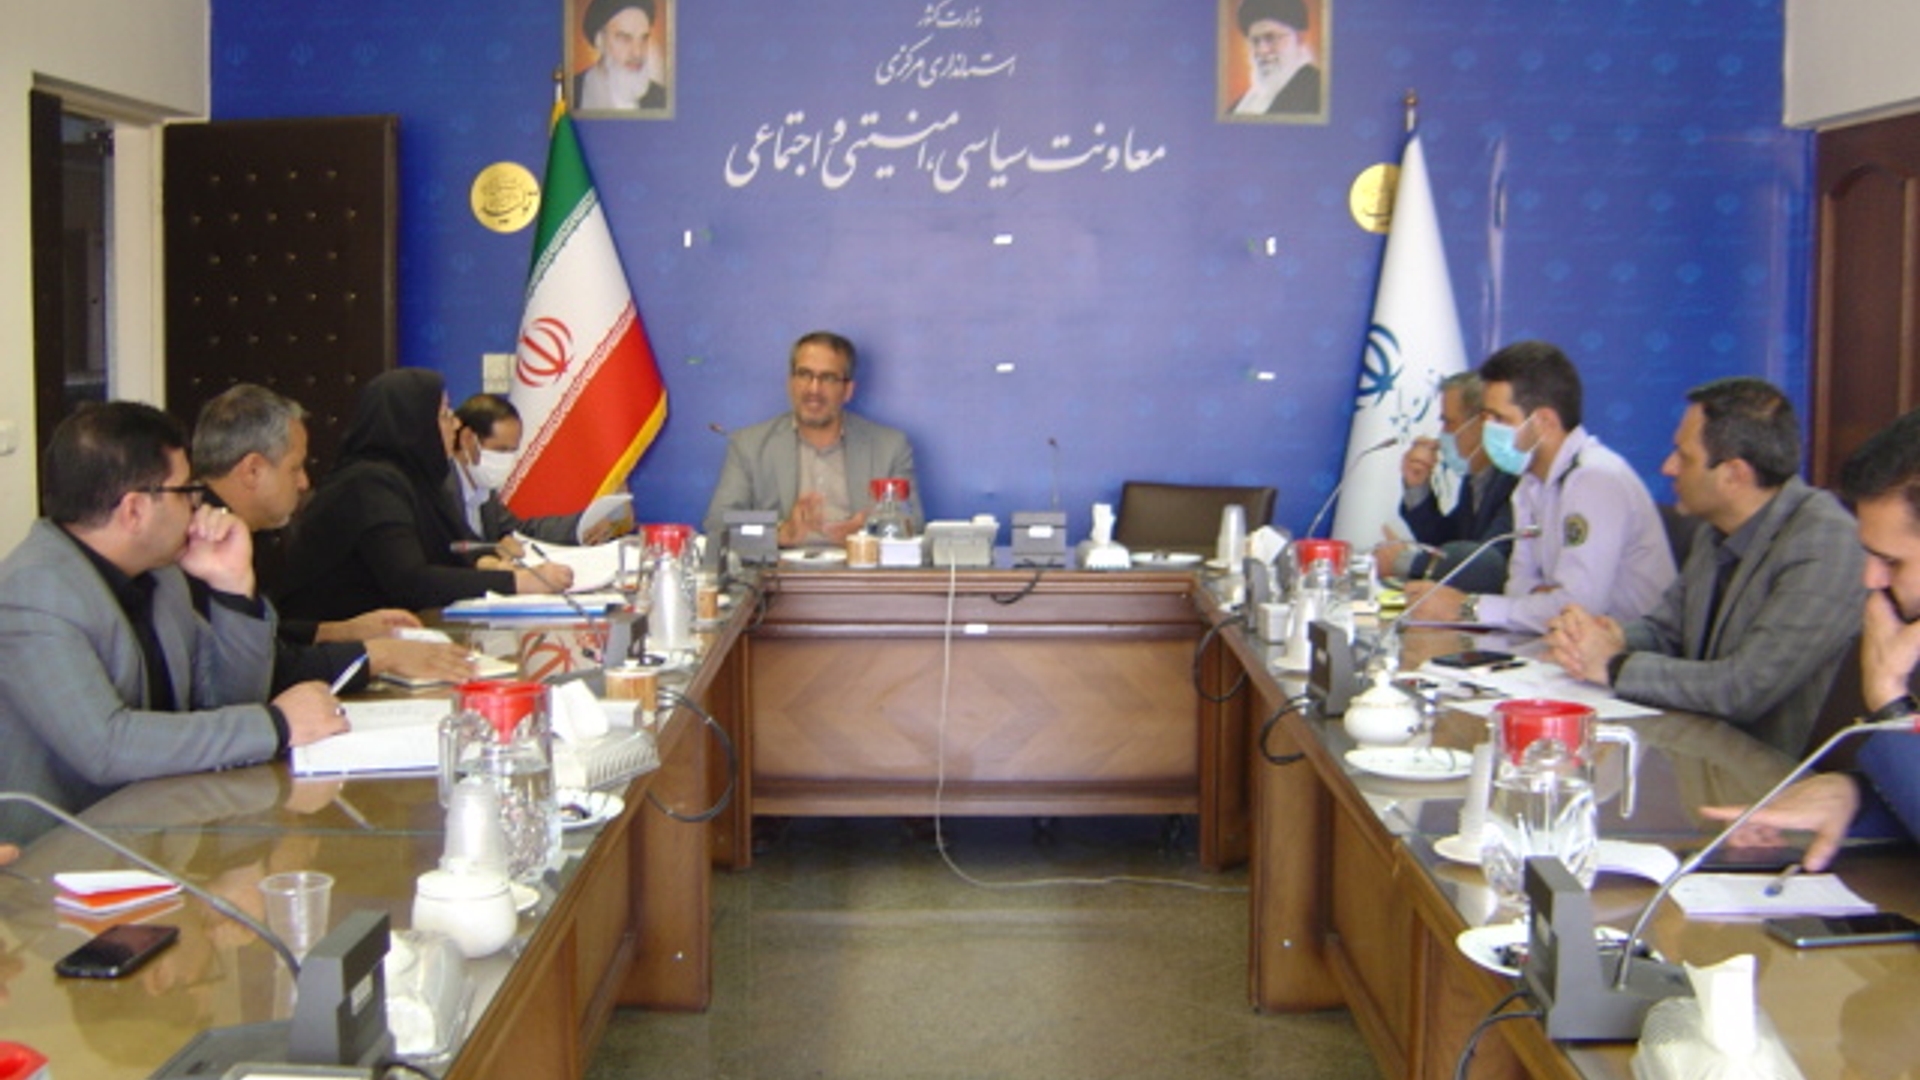 جلسه کمیته امنیتی پرنده های بدون سرنشین استان ساعت 11-00 صبح روز دوشنبه مورخ 1401-5-24 برگزار گردید.